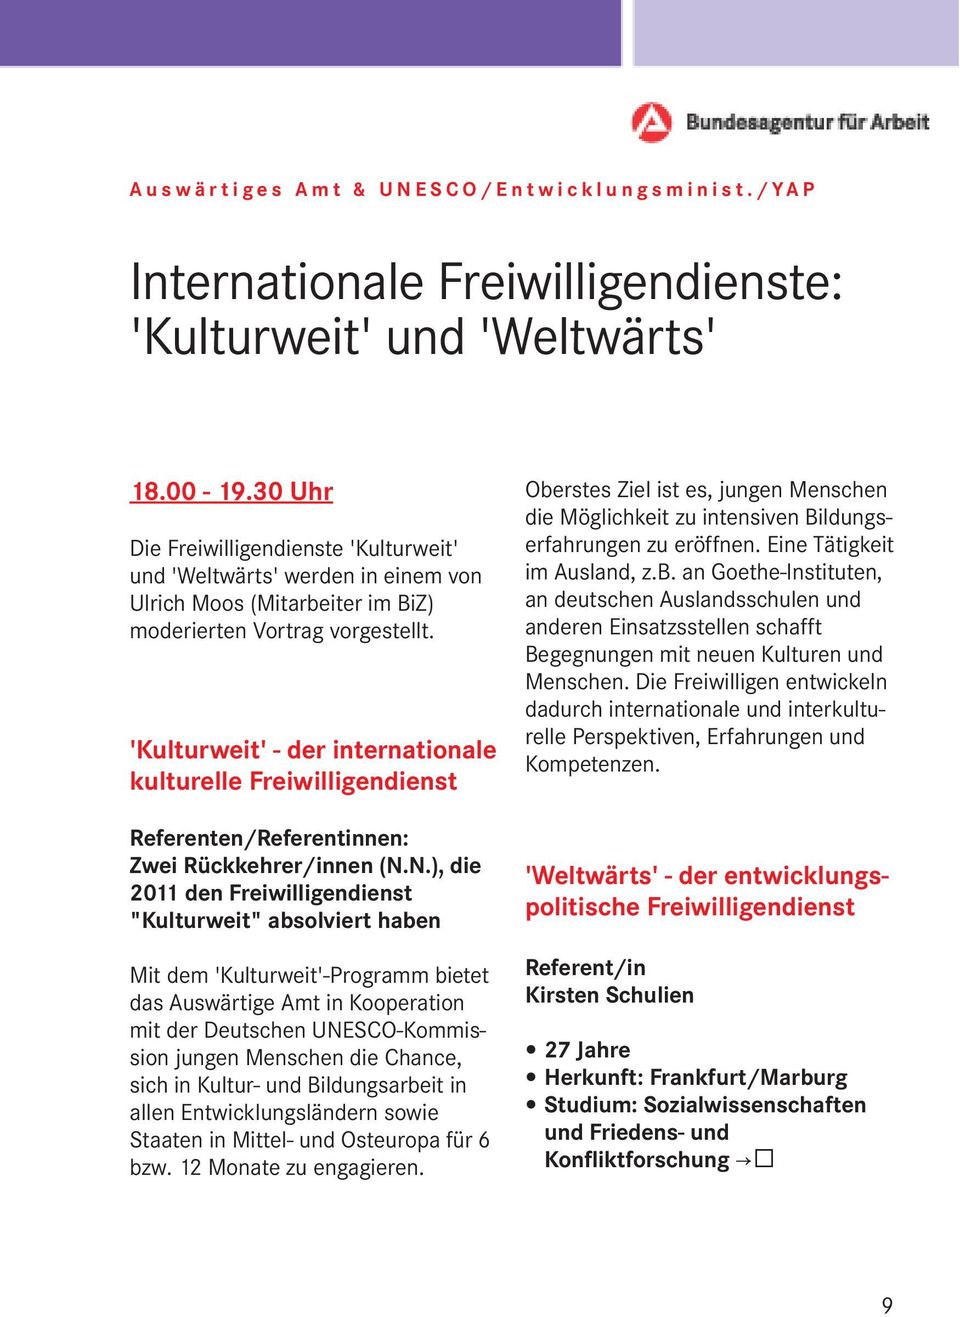 'Kulturweit' - der internationale kulturelle Freiwilligendienst Referenten/Referentinnen: Zwei Rückkehrer/innen (N.